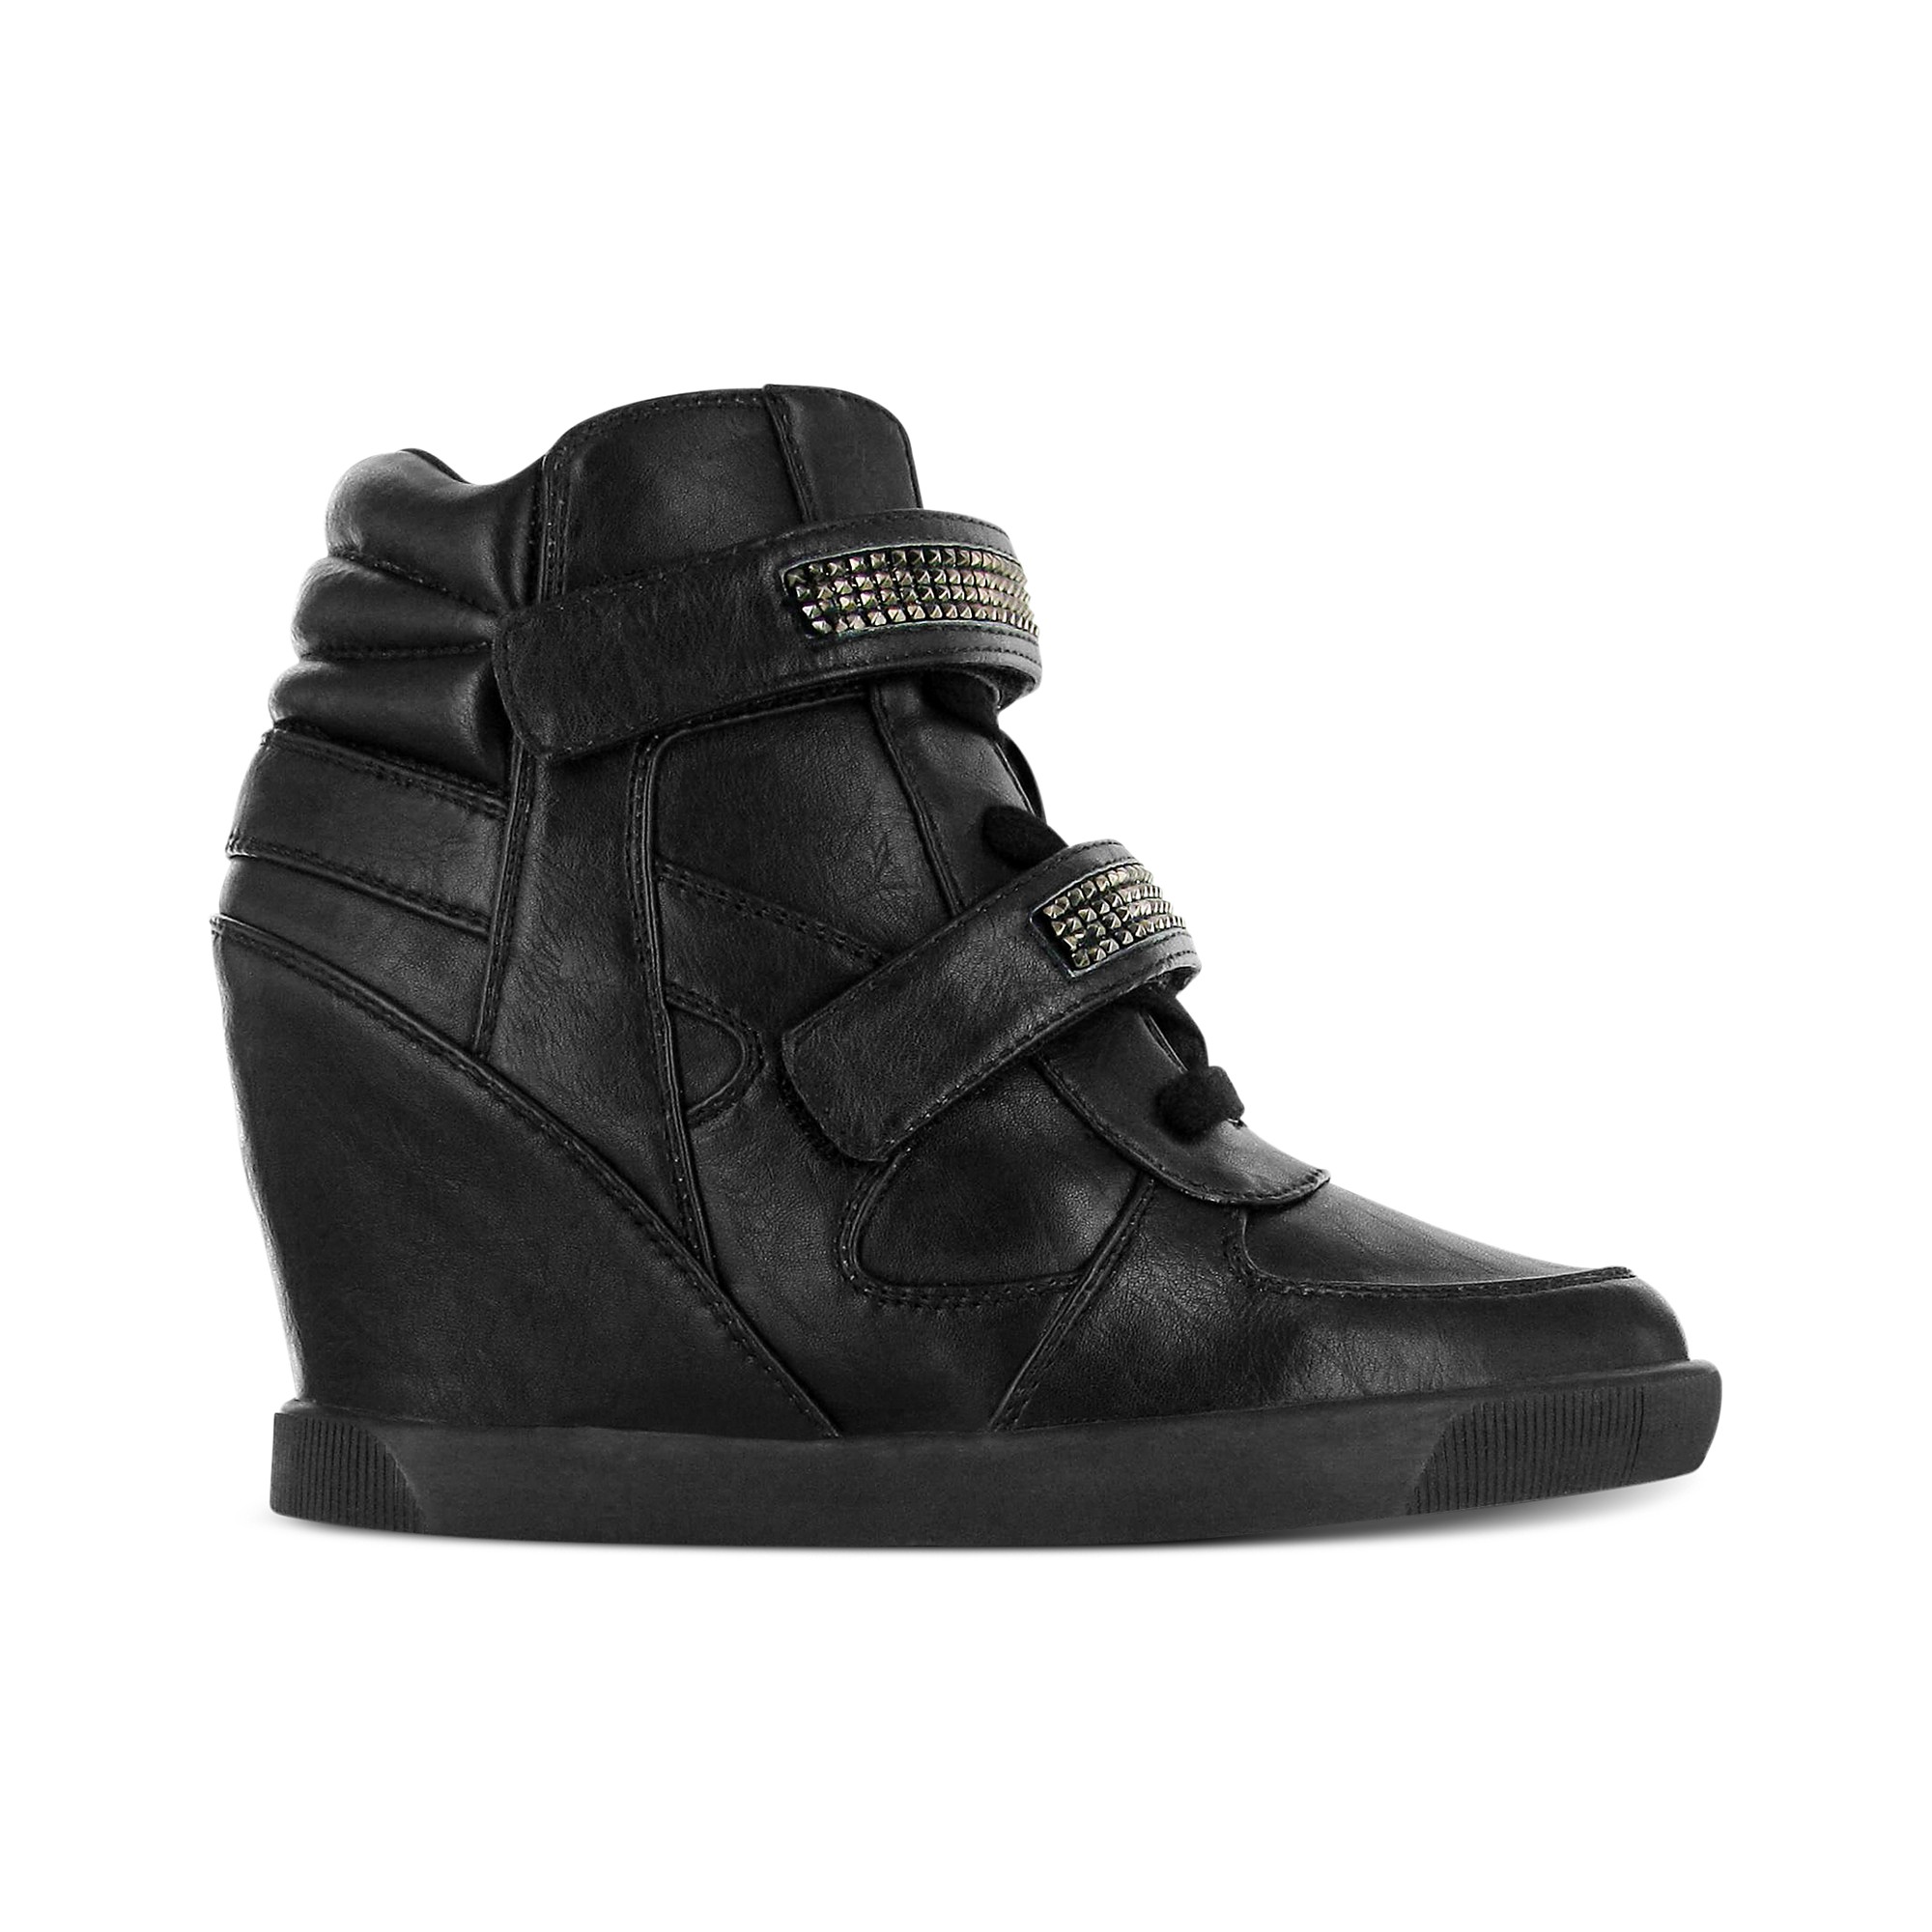 Mia Flame Wedge Sneakers in Black | Lyst